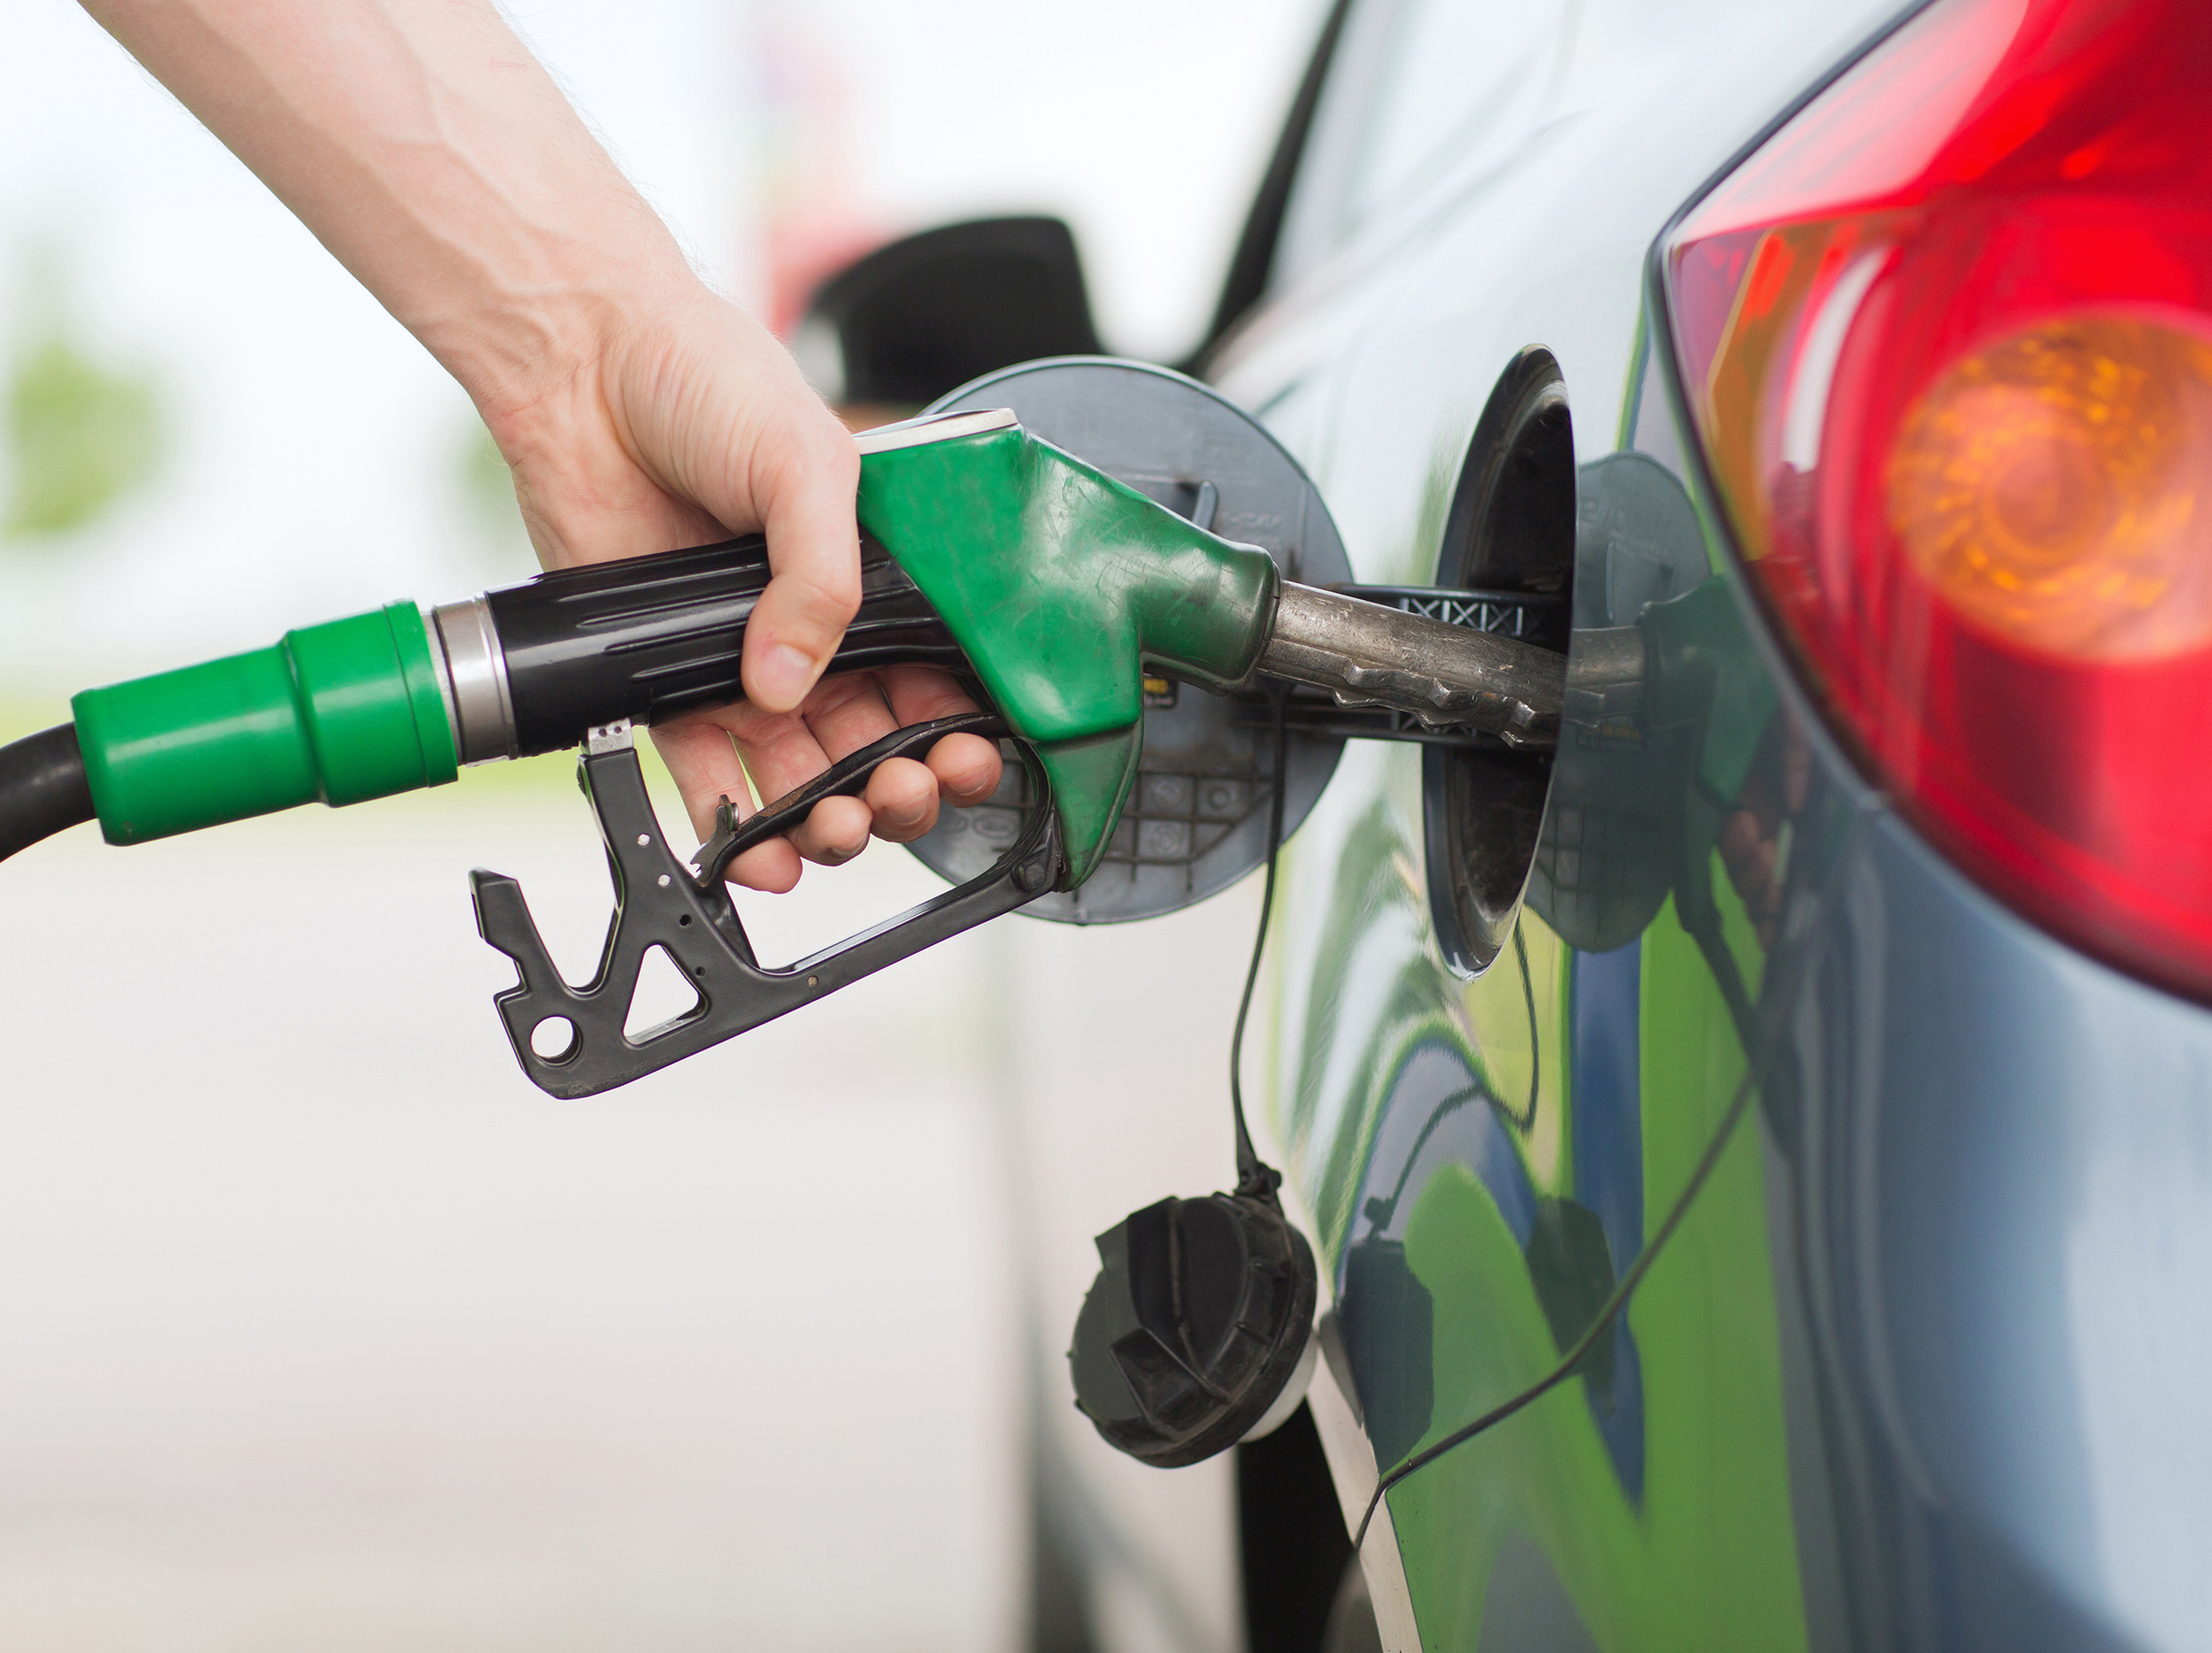 FairFuelUK and MPs investigate fuel pump prices